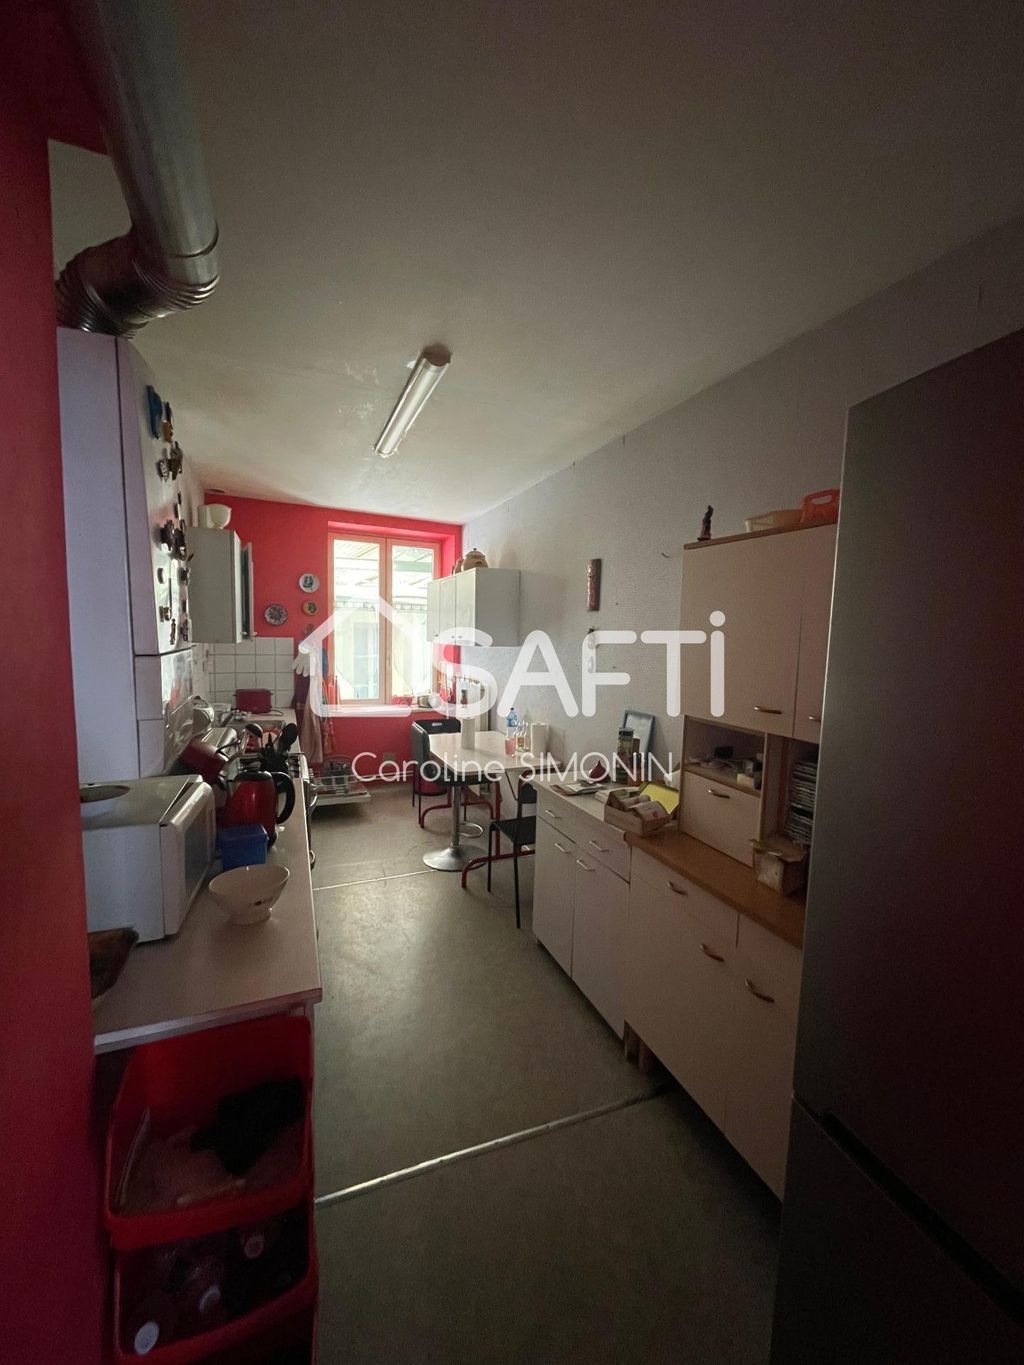 Achat appartement 6 pièce(s) Remiremont